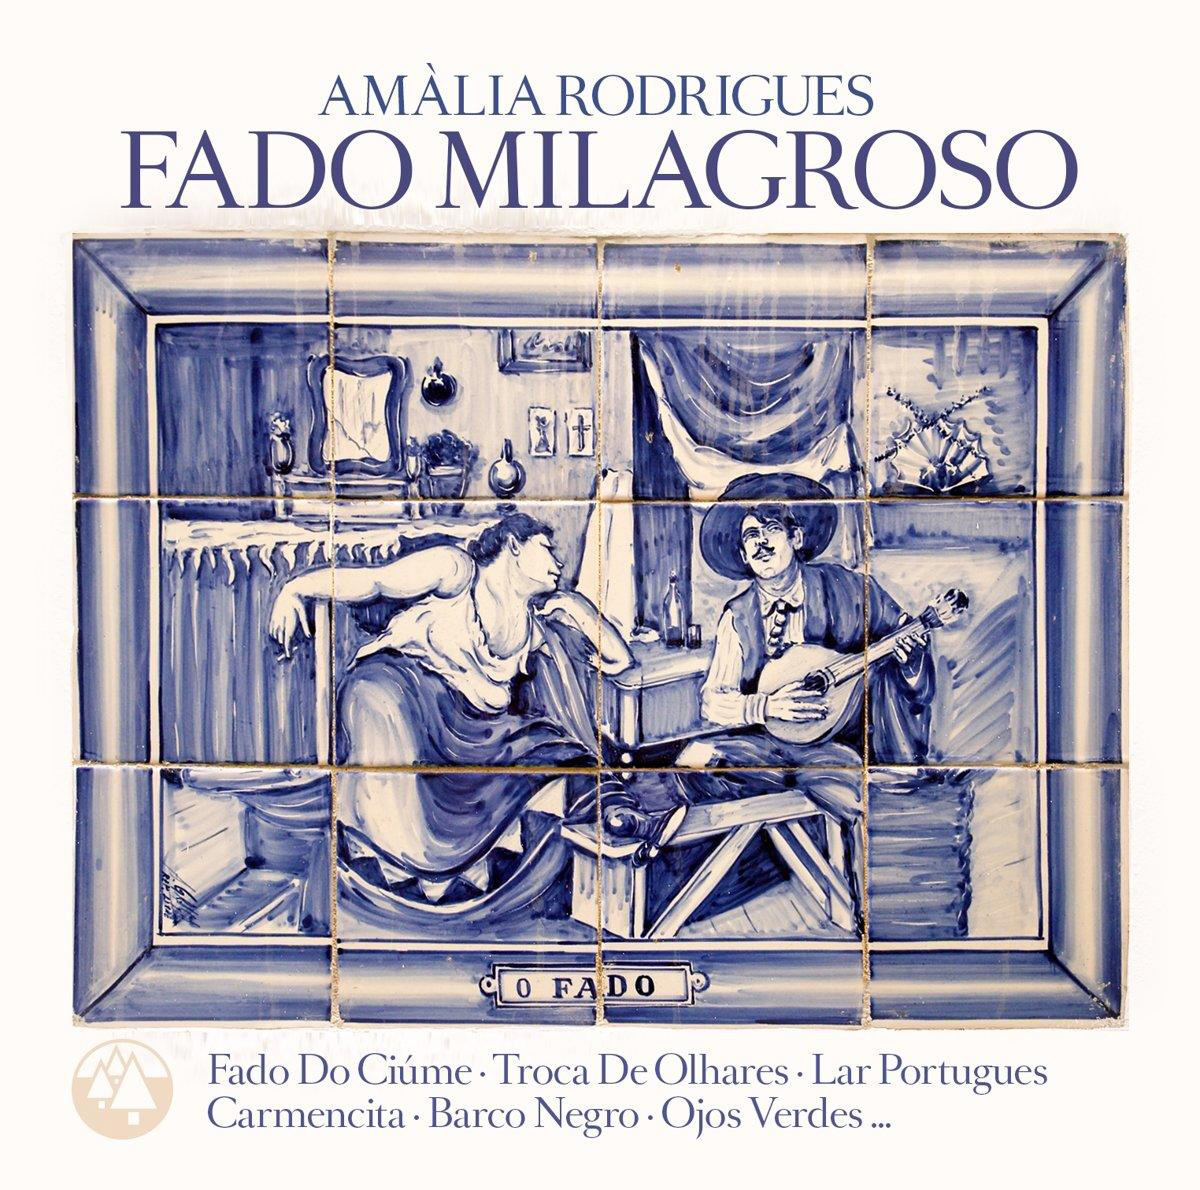 Amália Rodrigues - Fado - (Vinyl) Milagroso